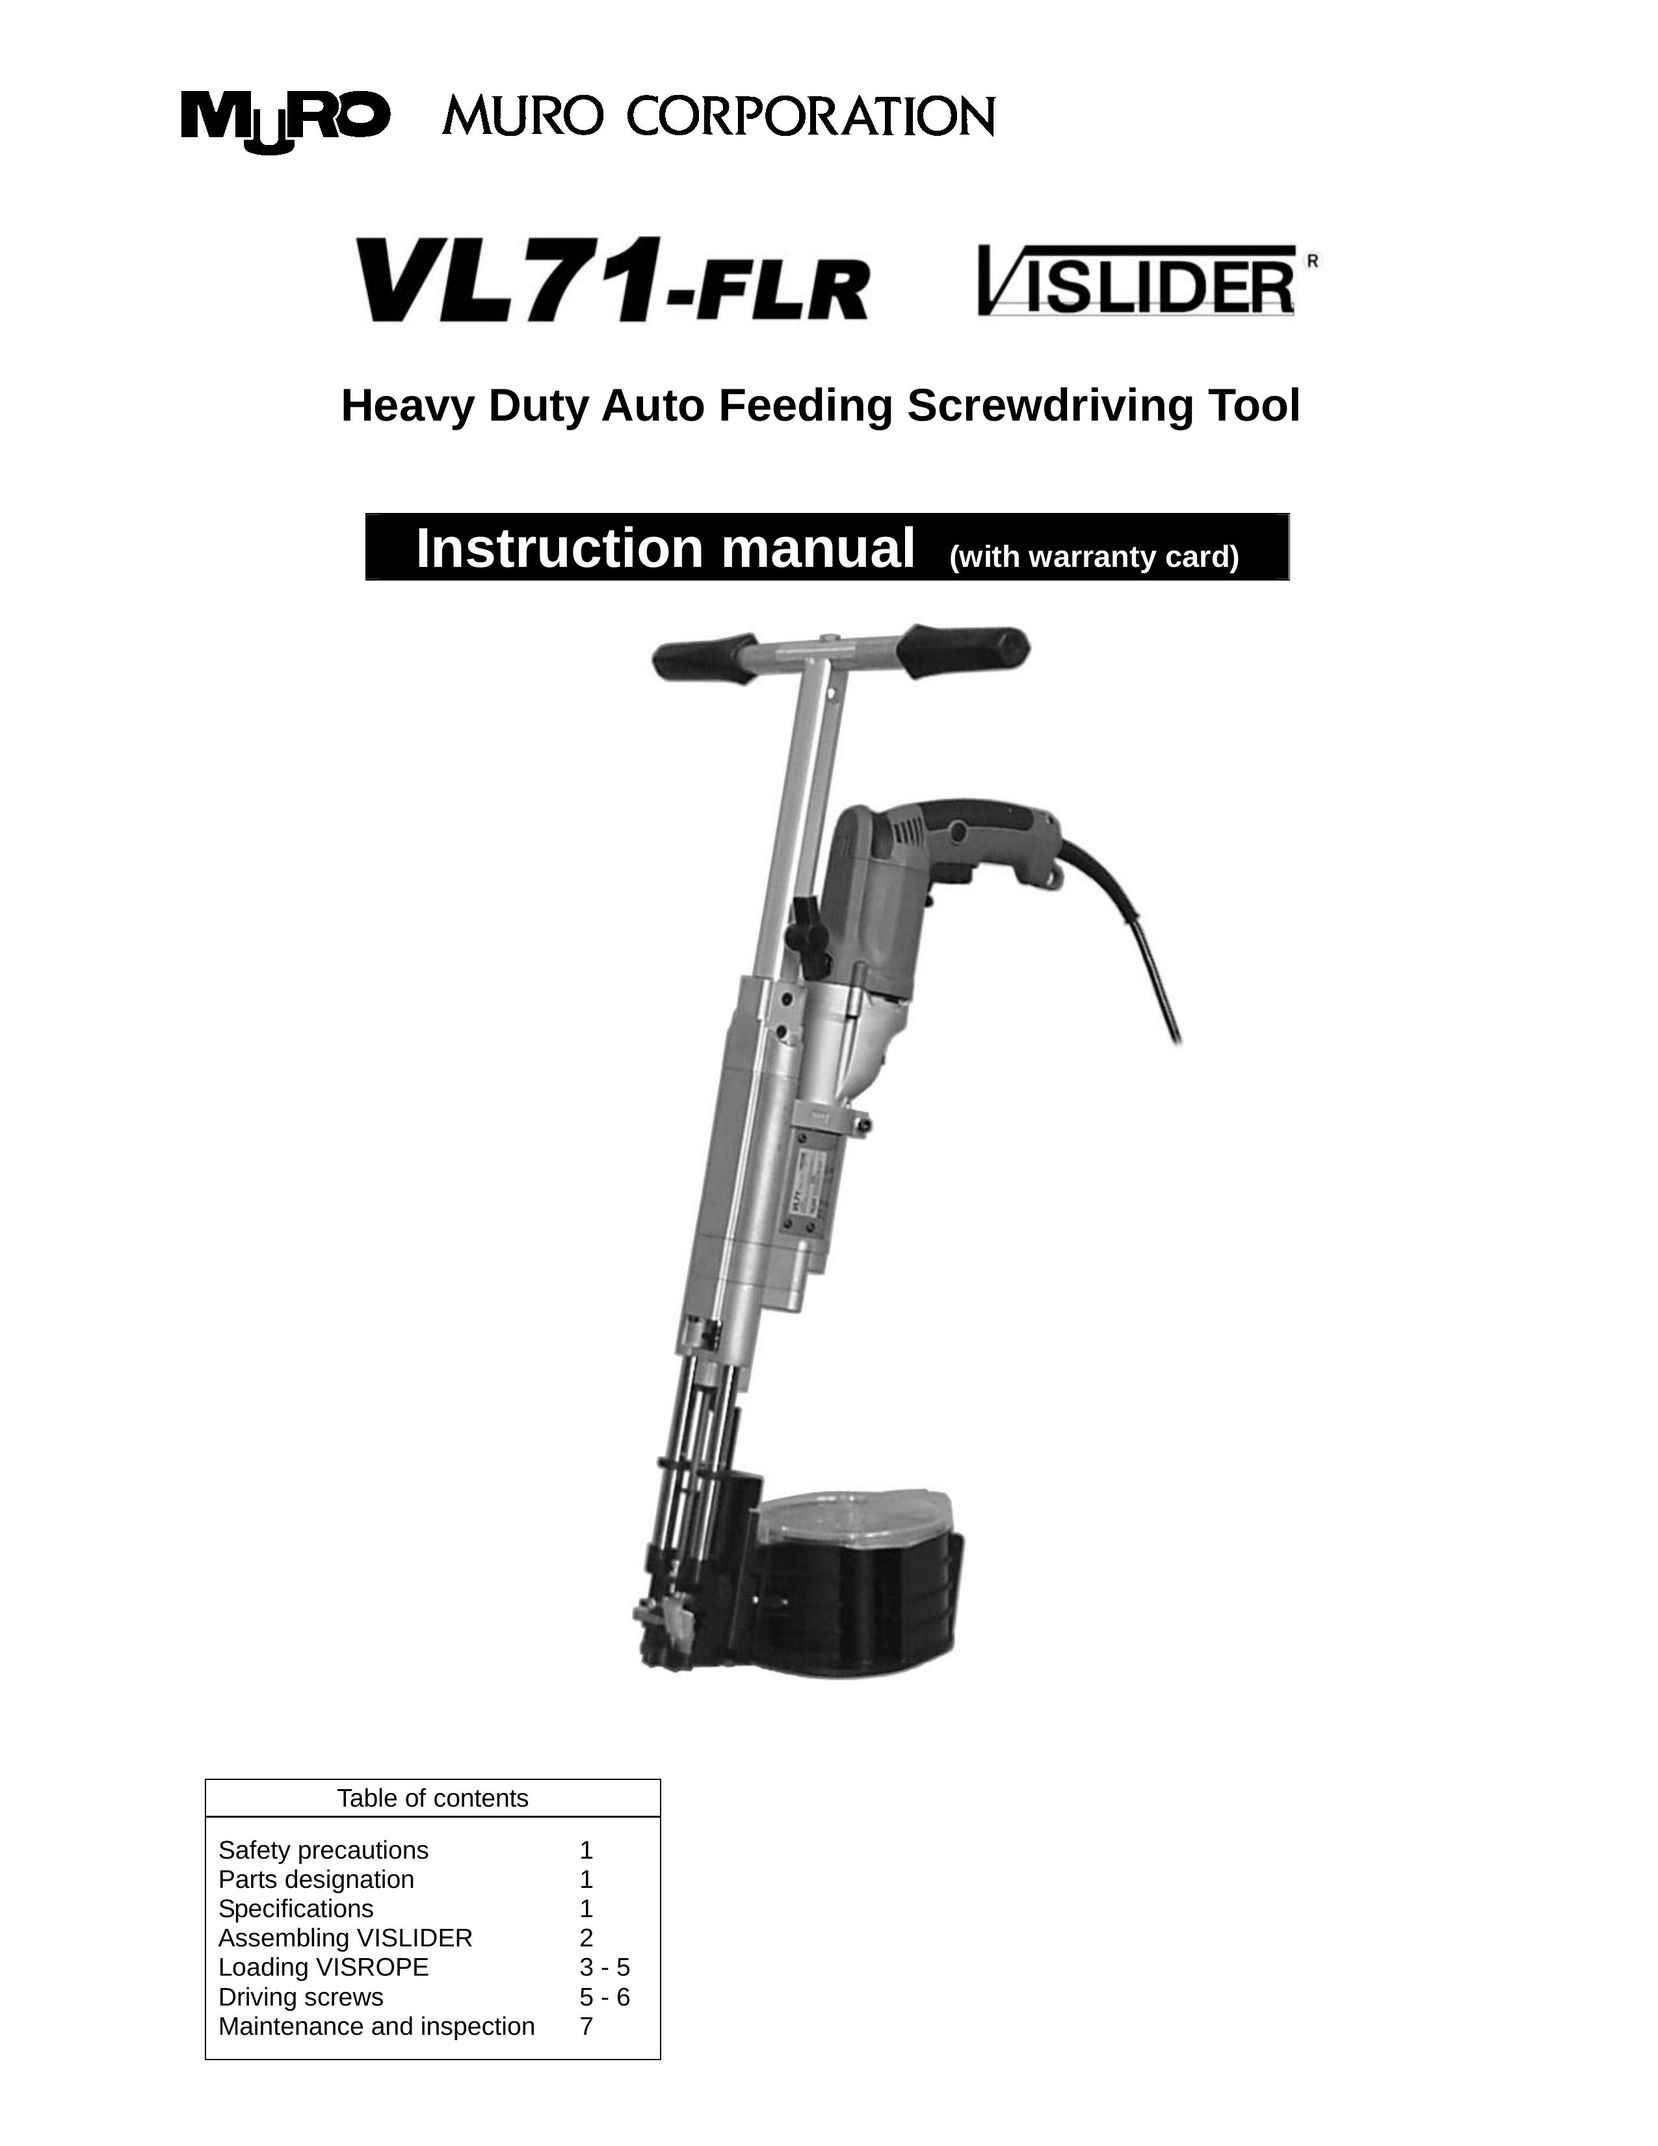 MURO VL71-FLR Power Screwdriver User Manual